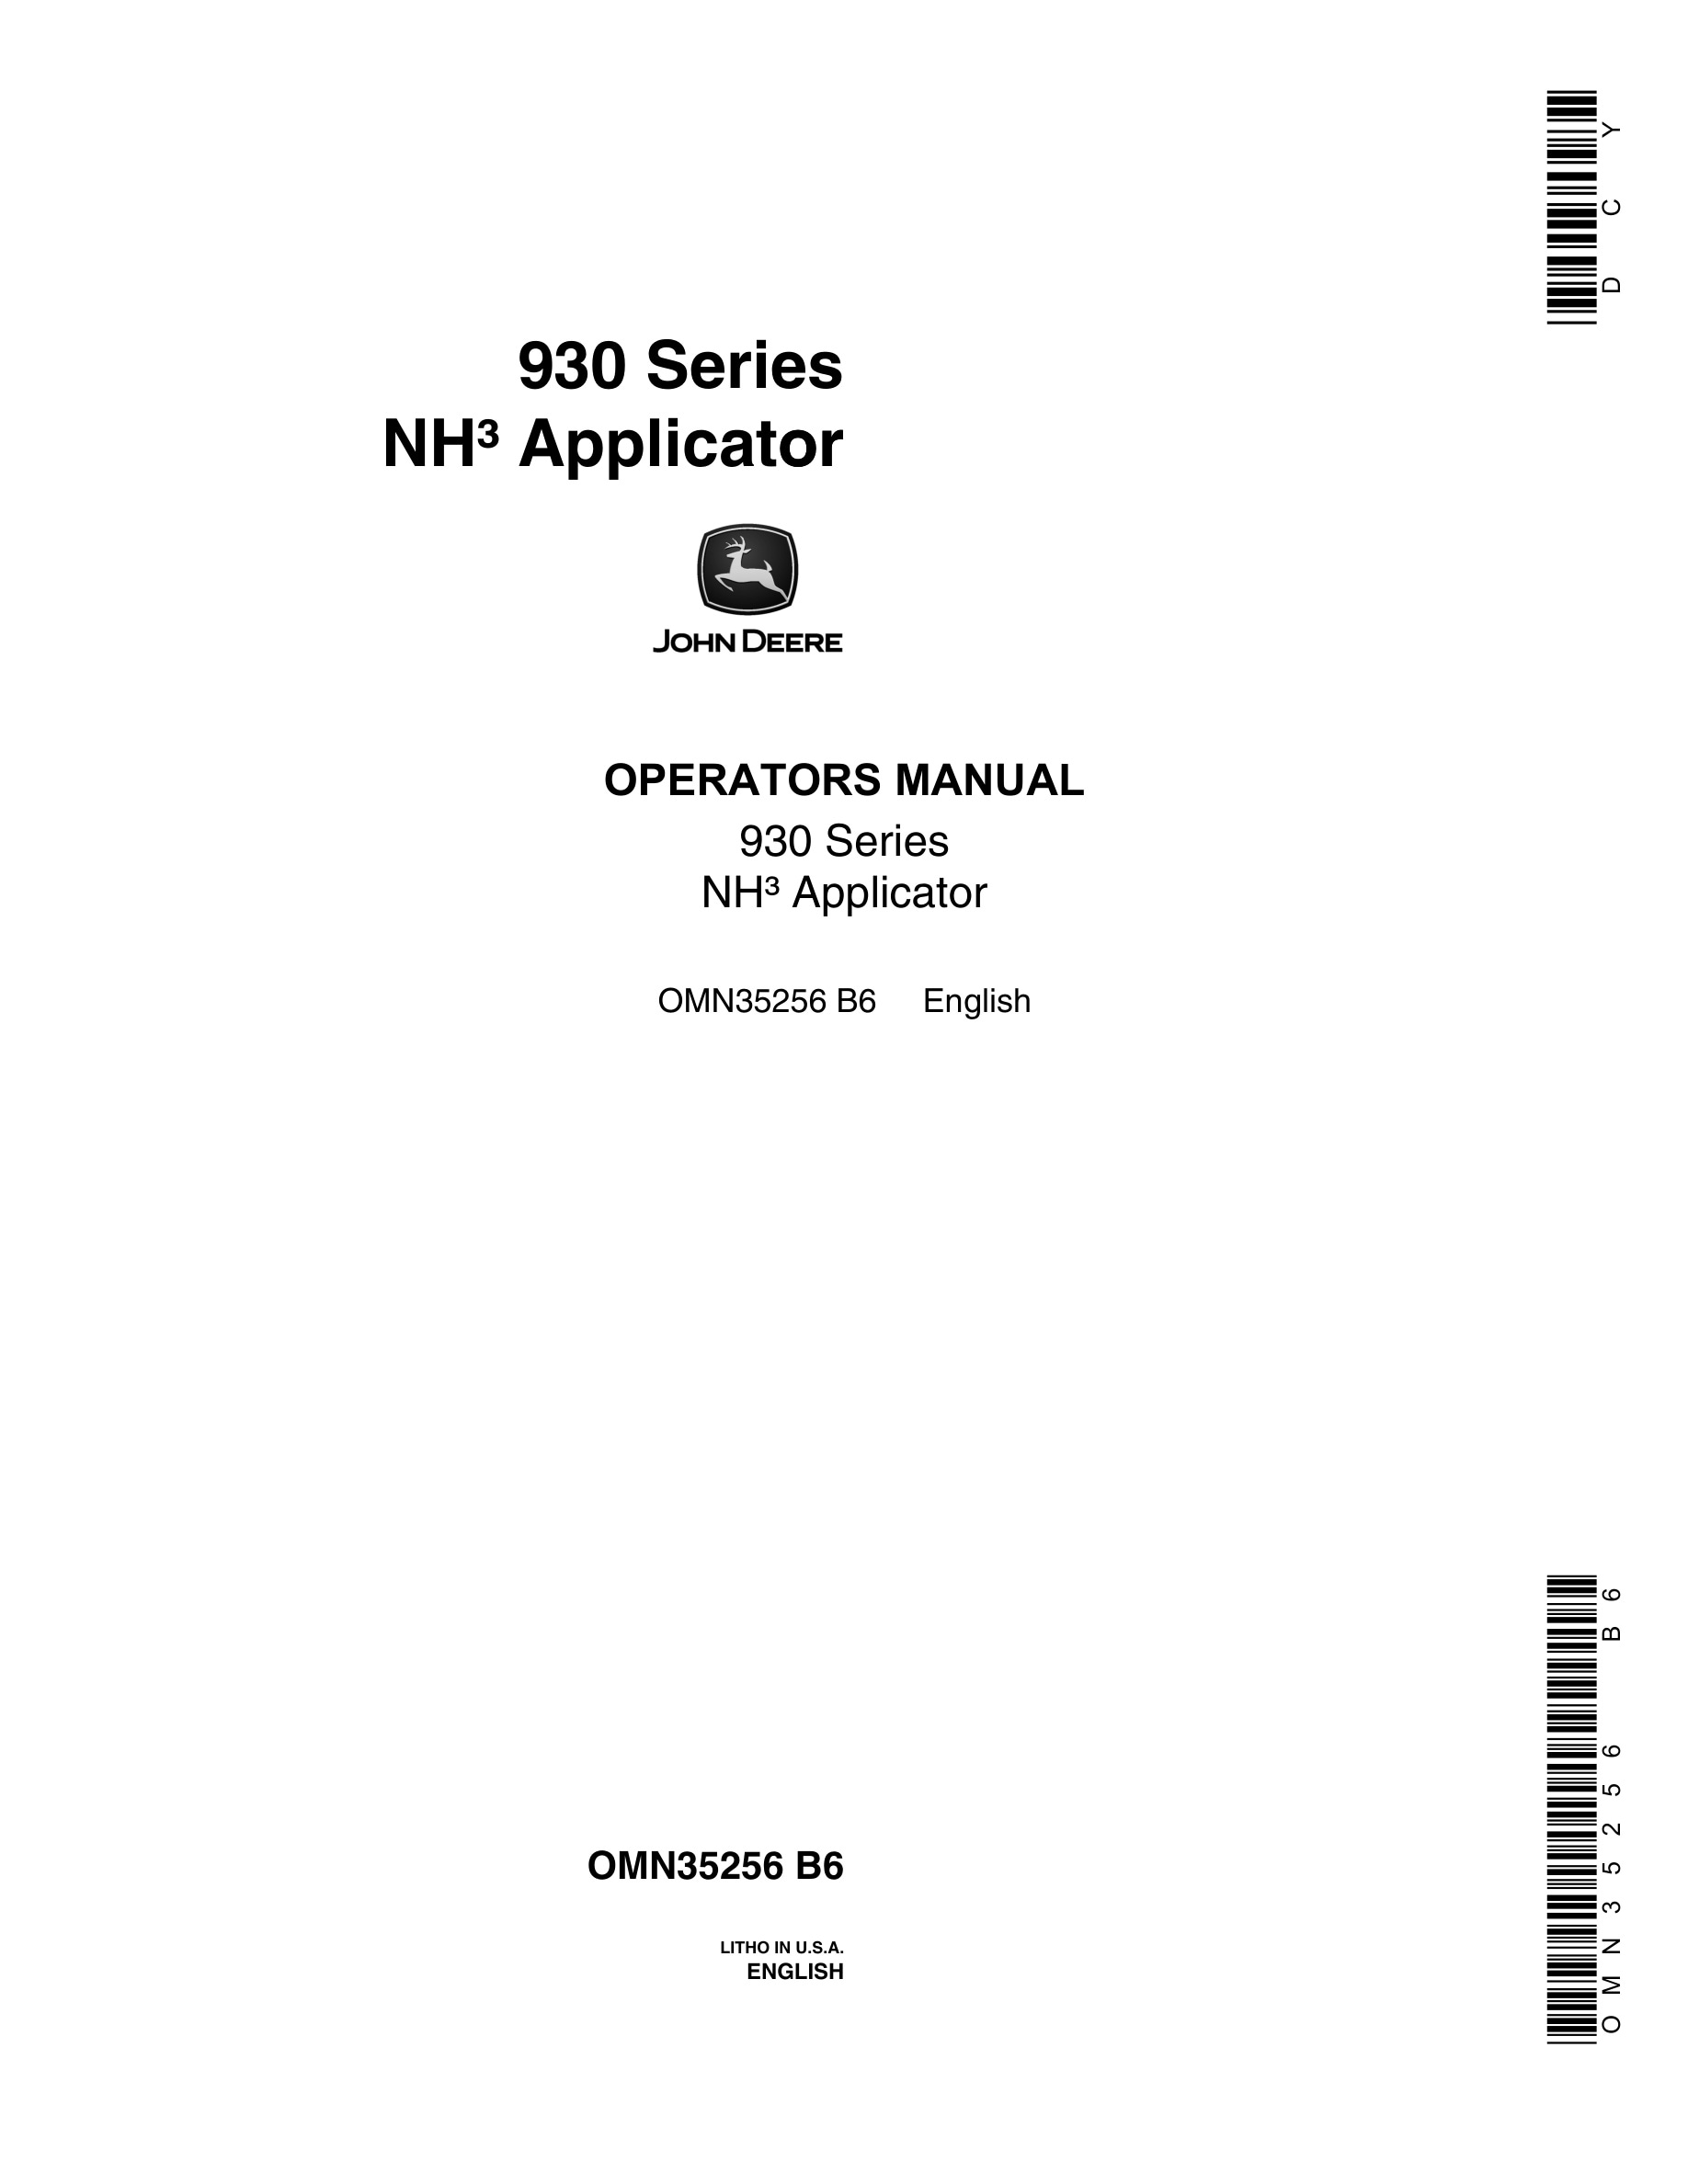 John Deere 930 Series NH Applicator Operator Manual OMN35256-1